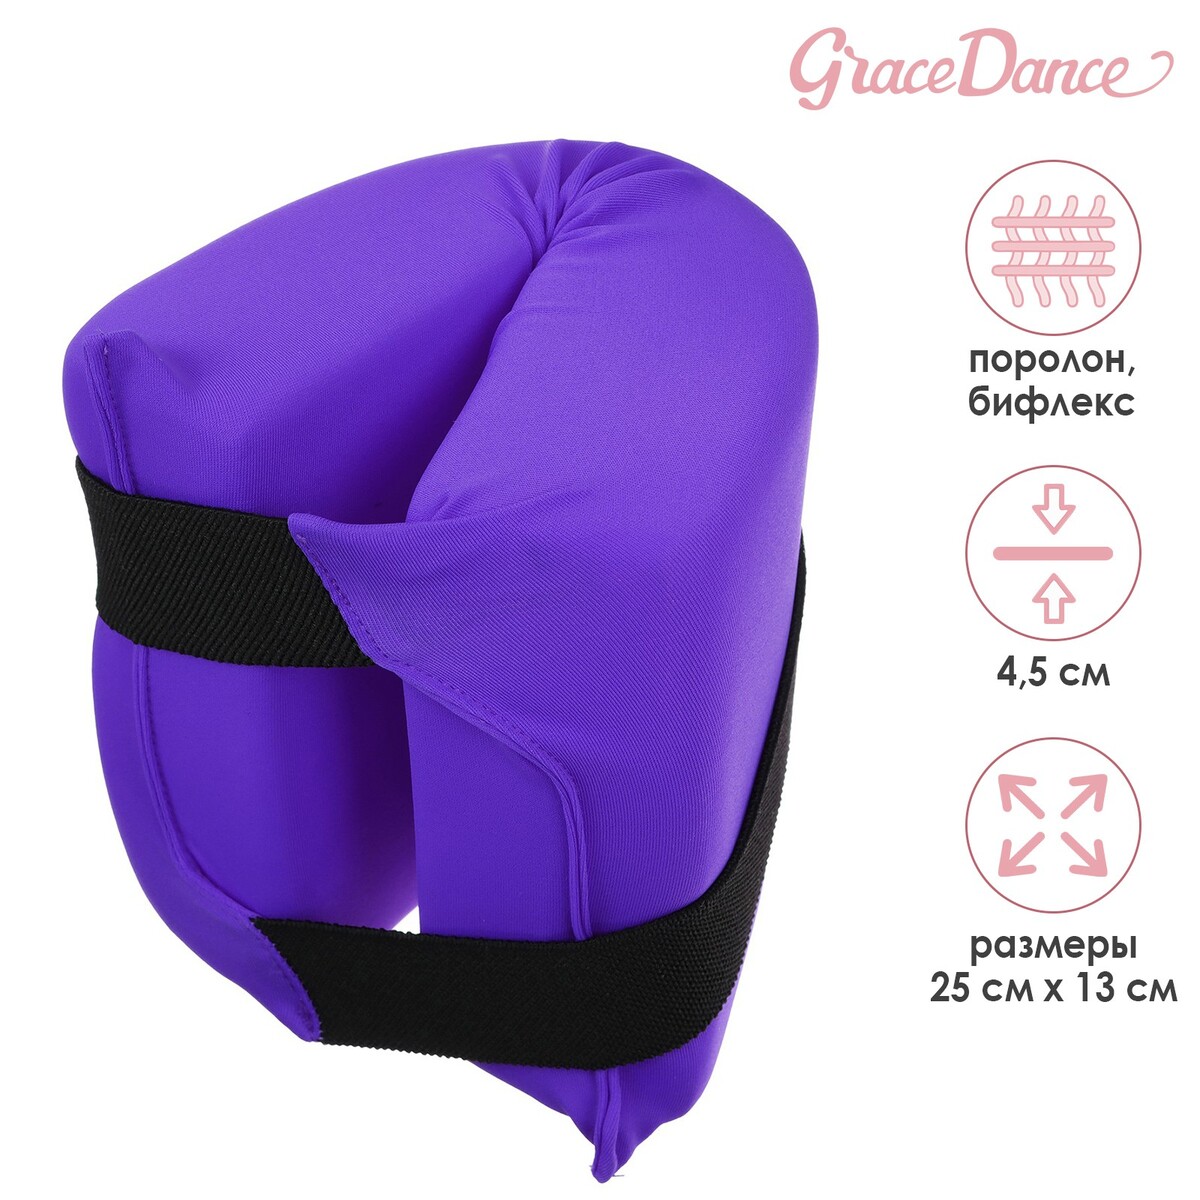 Подушка для растяжки grace dance, цвет фиолетовый подушка балансировочная onlytop массажная d 35 см фиолетовый